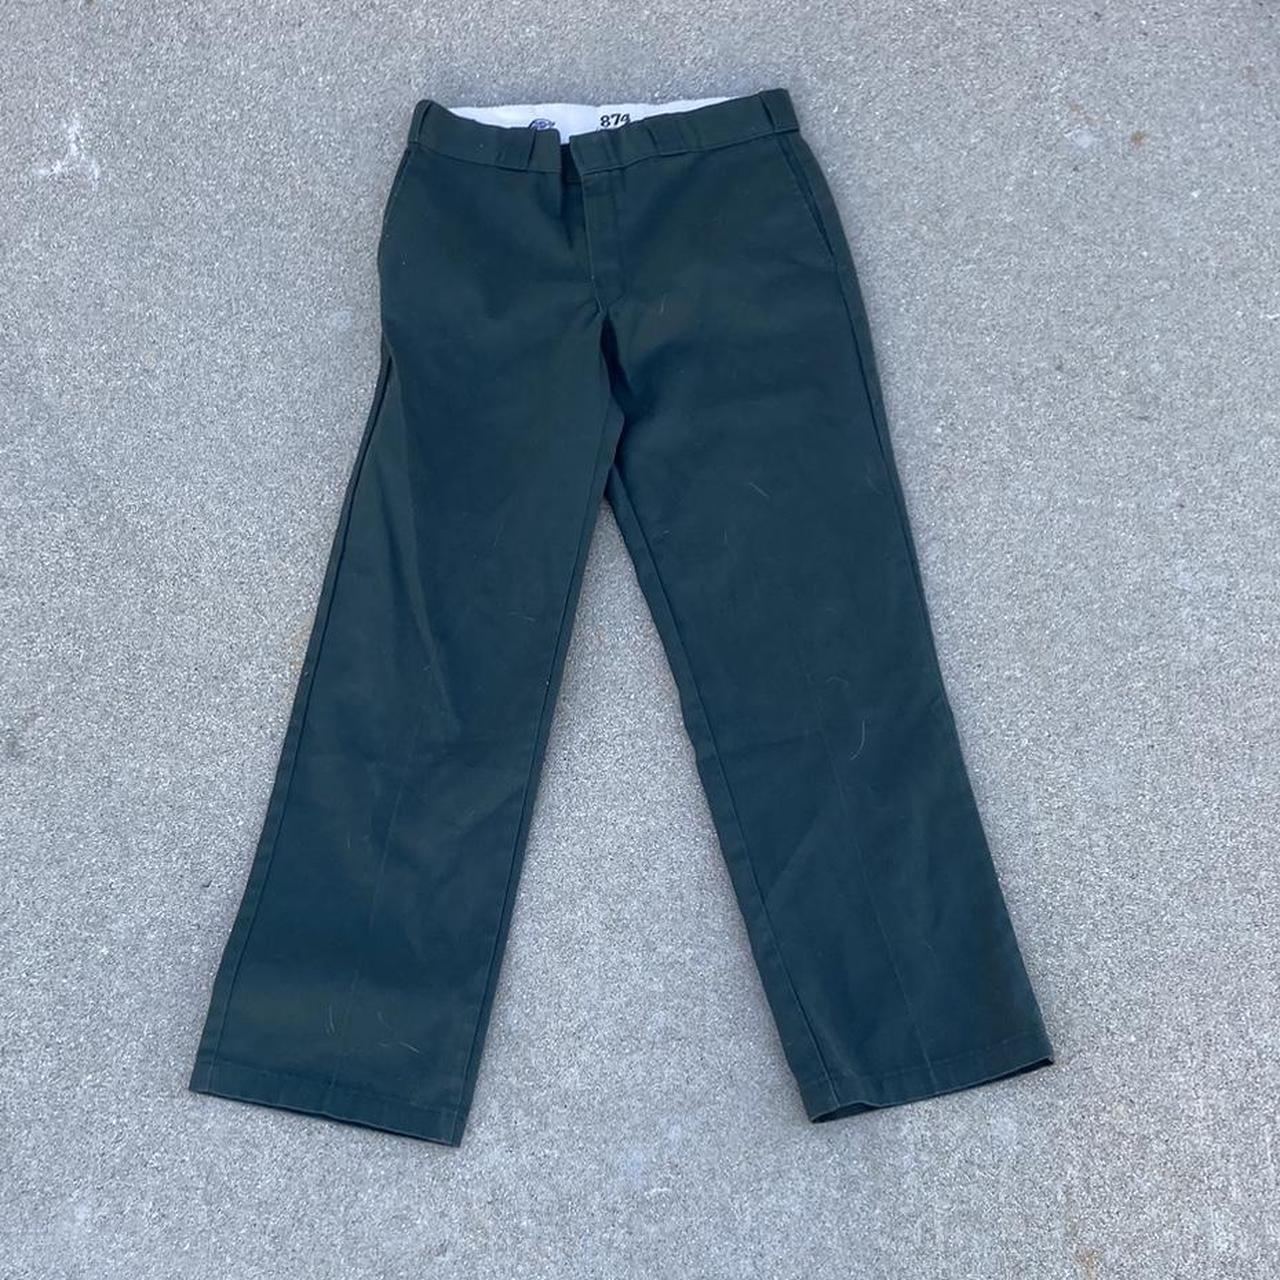 Dickies Original 874 Work Pants - Hunter Green | SoCal Skateshop